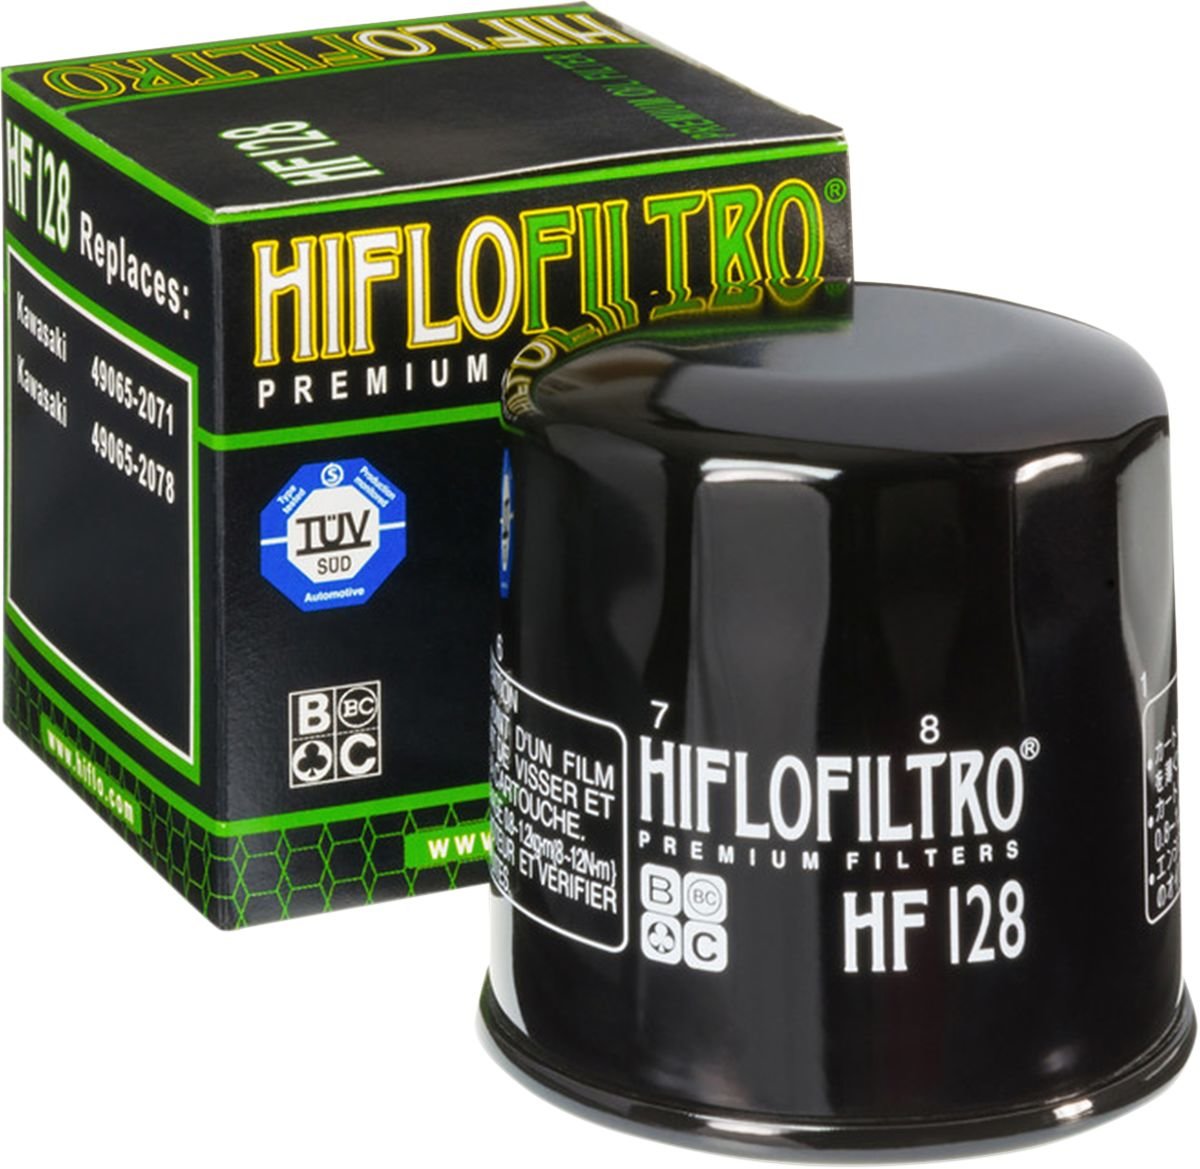 HIFLOFILTRO Filter Oil Hiflo Filtro von HifloFiltro